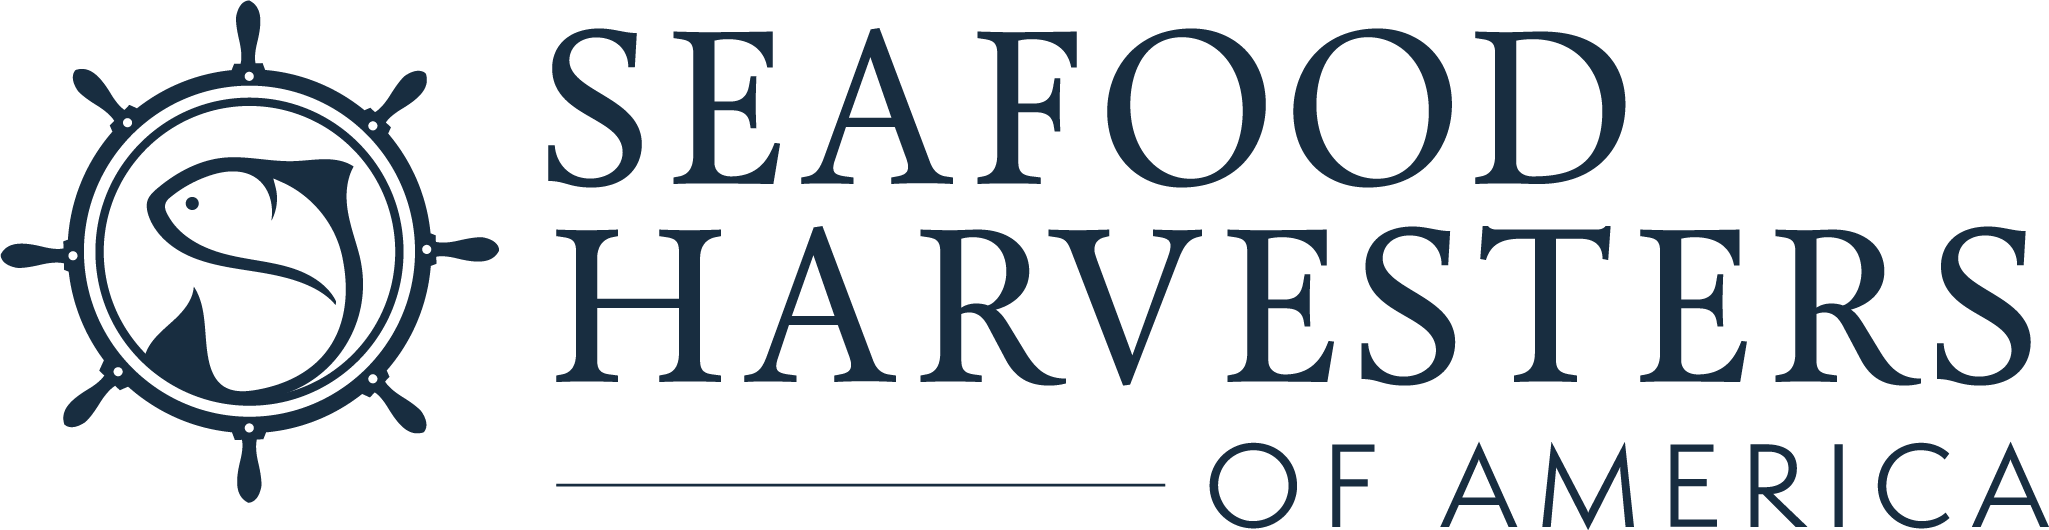 Seafood Harvesters of America